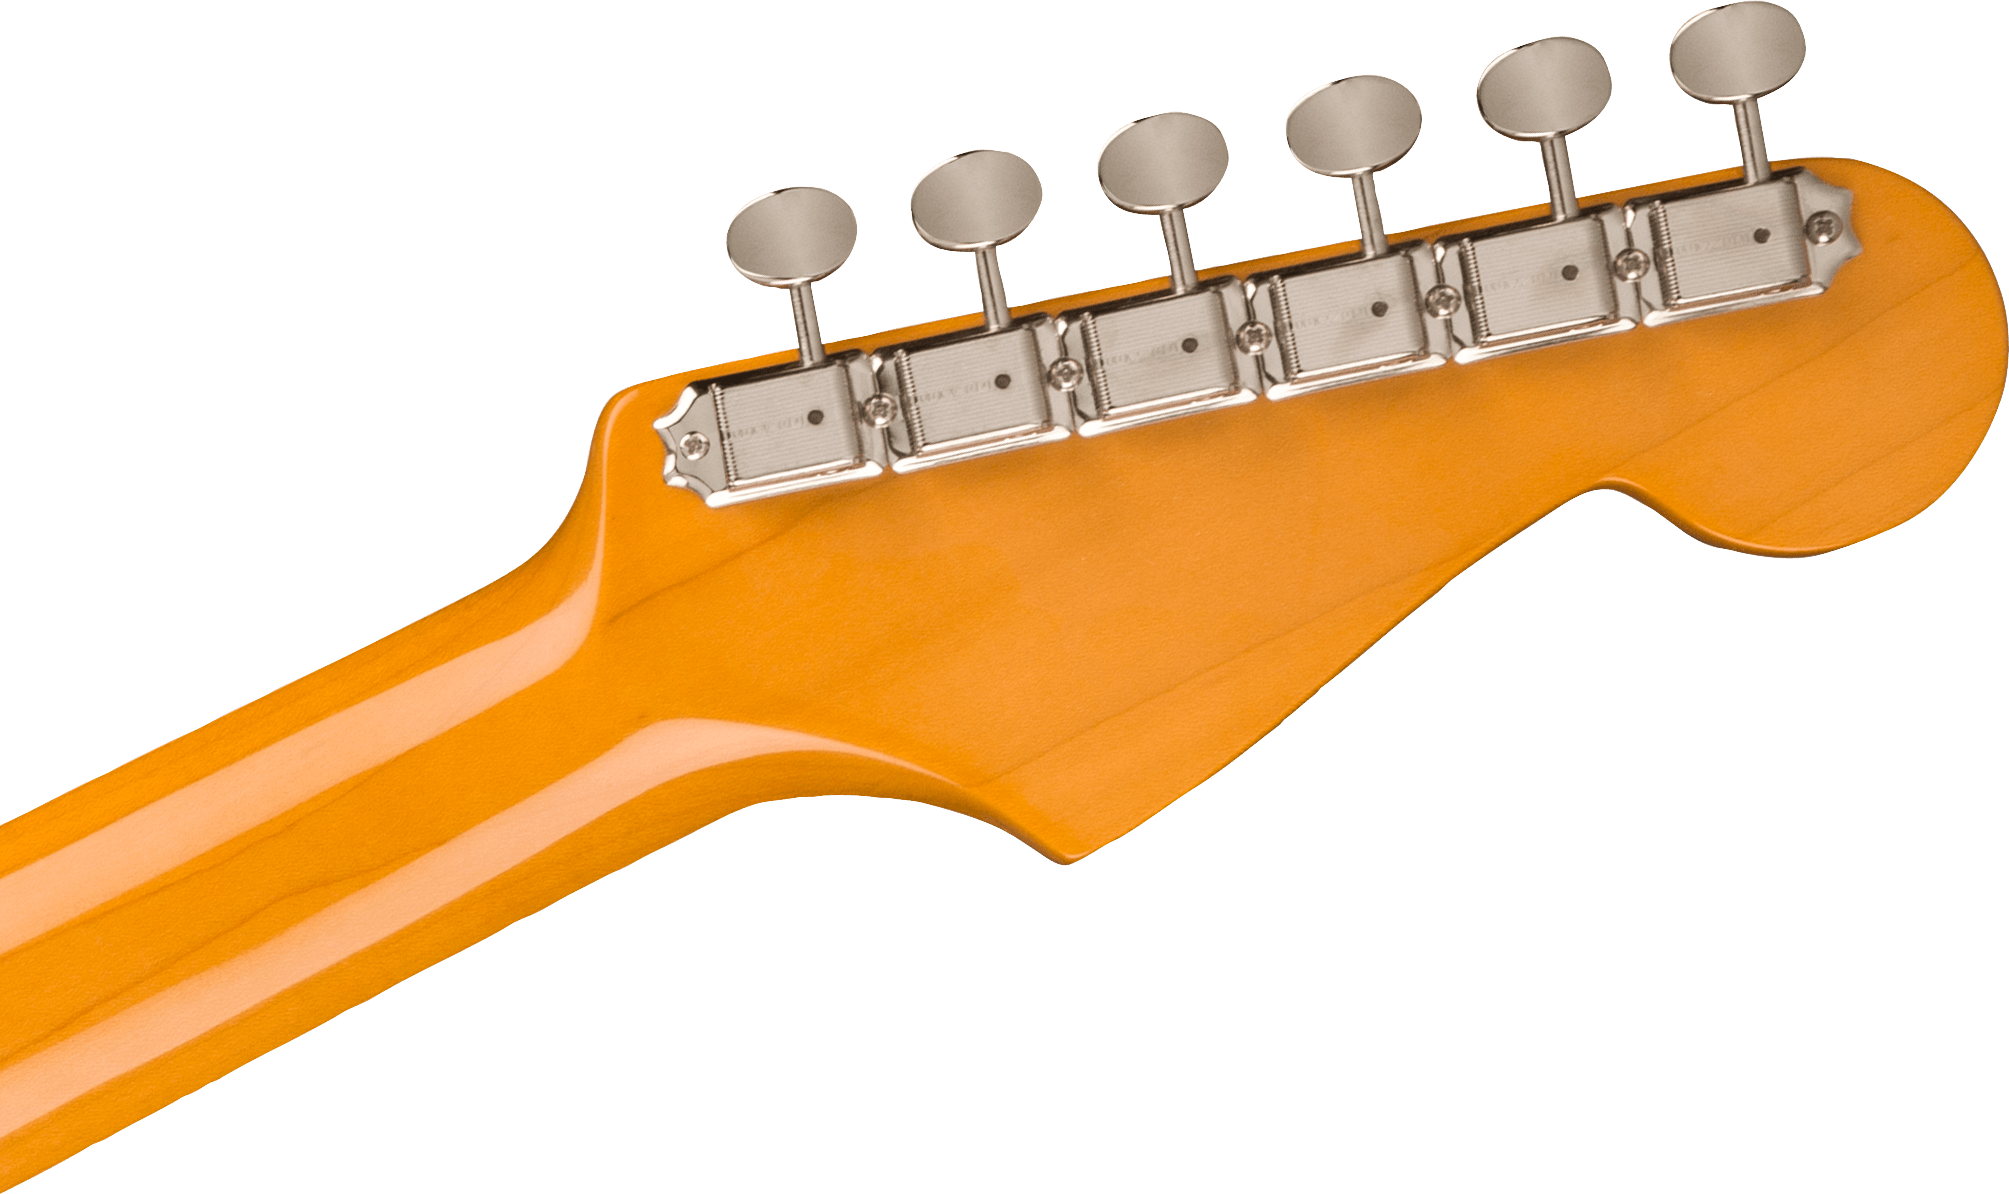 American Vintage II 1961 Stratocaster Left-Hand 3-Color Sunburst